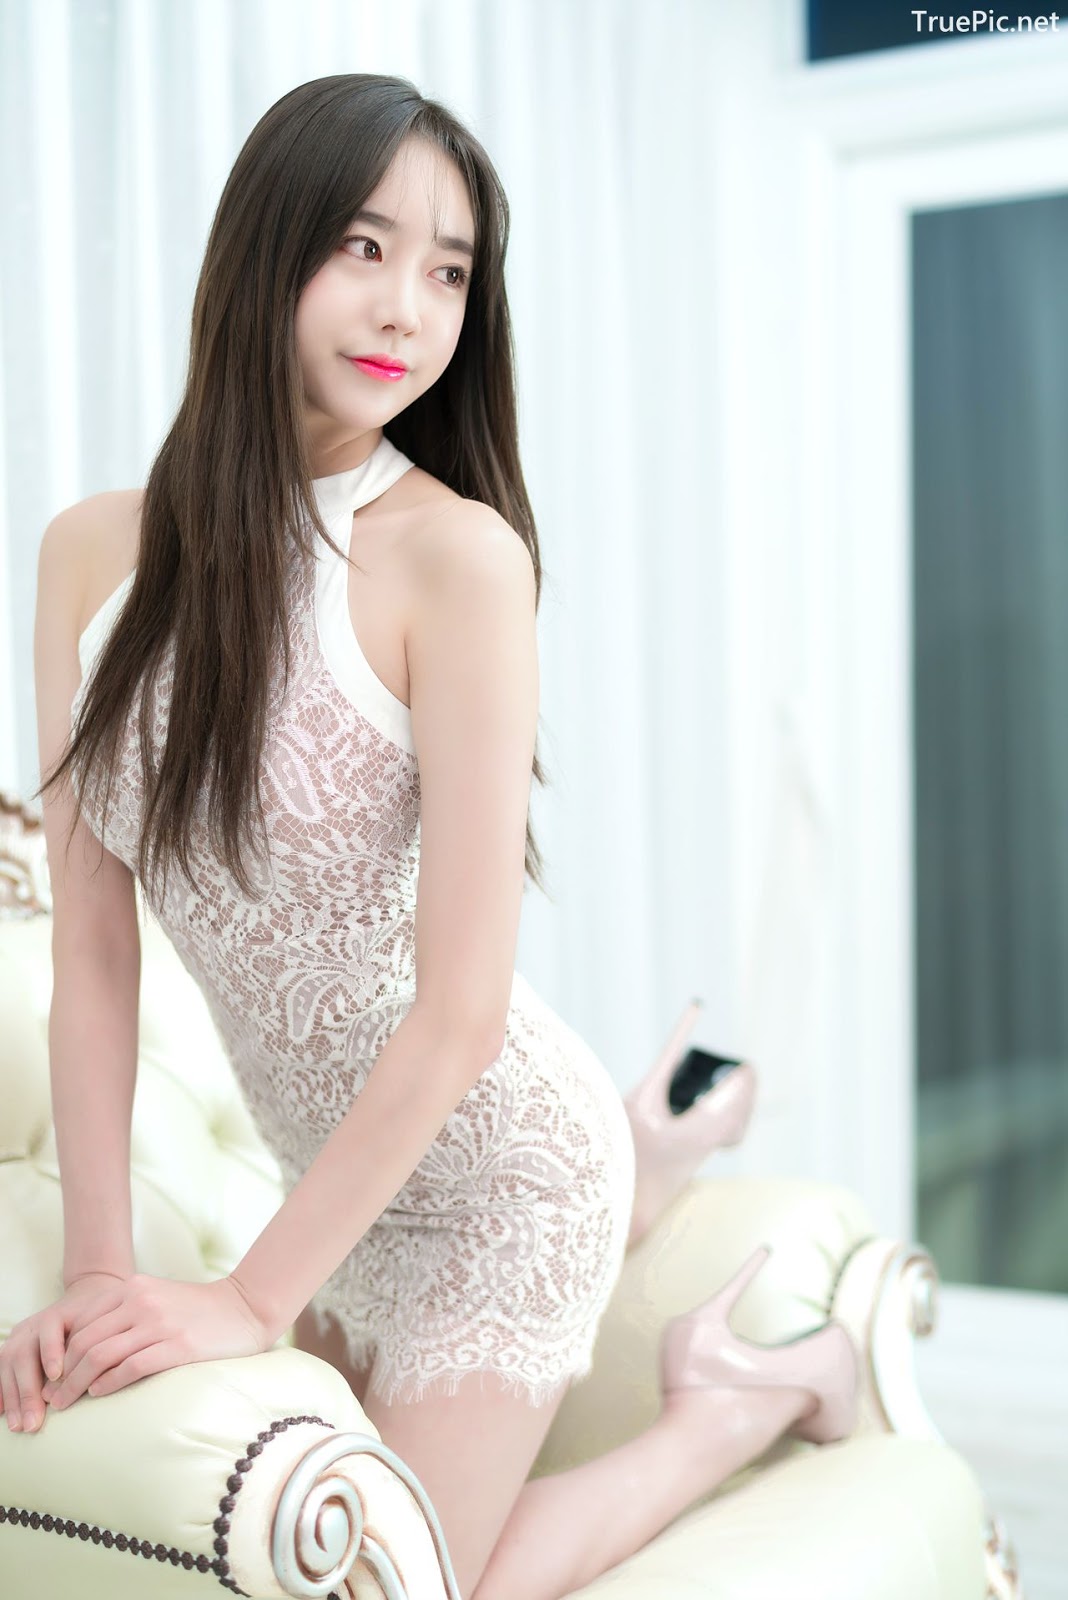 Image-Korean-Hot-Model-Go-Eun-Yang-Indoor-Photoshoot-Collection-TruePic.net- Picture-82